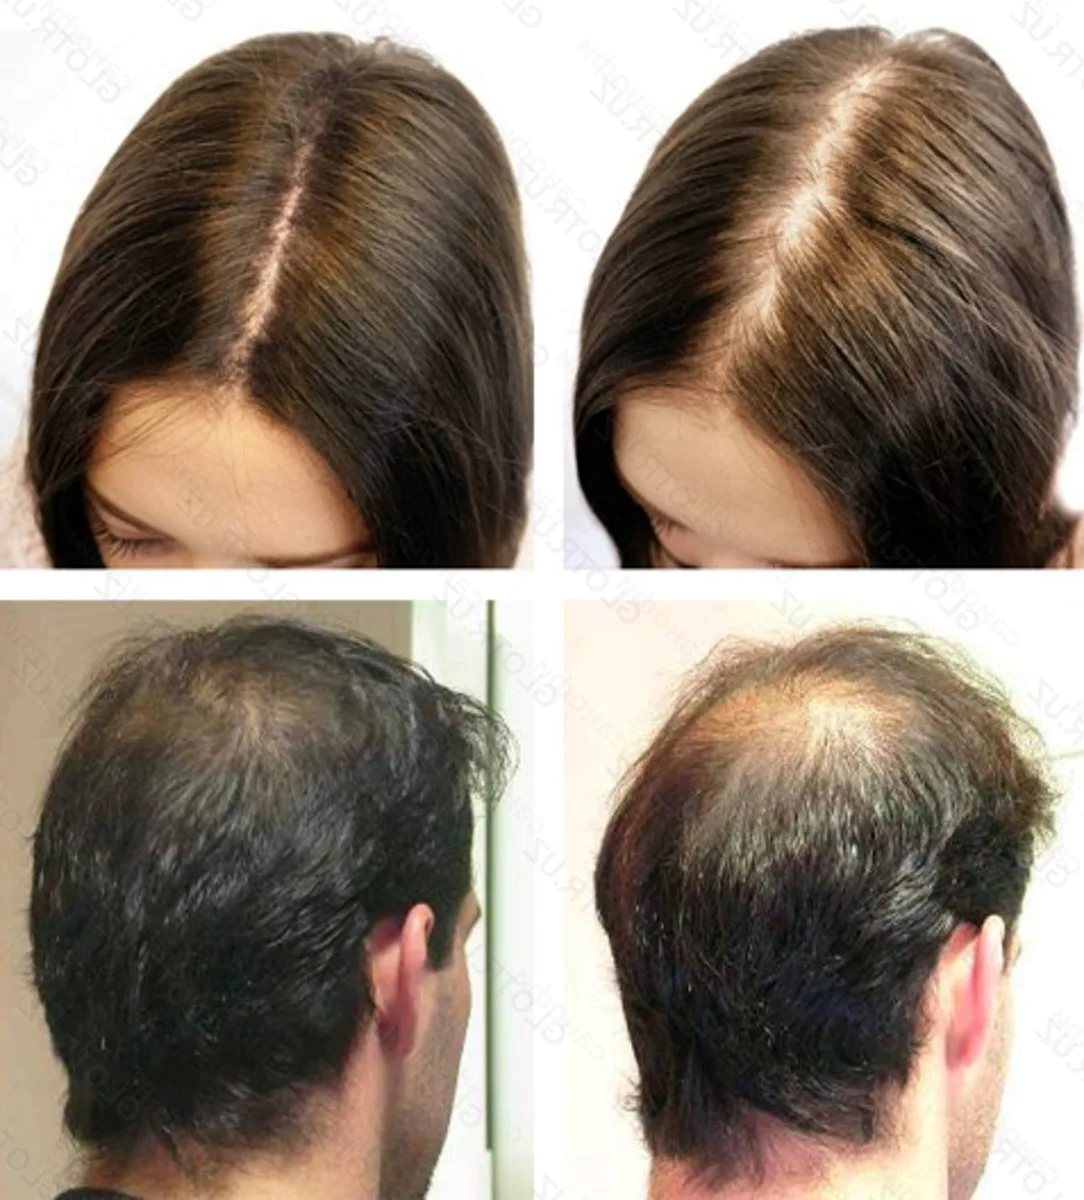 Отзывы врачей выпадение волос. Андрогенная алопеция миноксидил. Андрогенная алопеция Гамильтон. Андрогенная алопеция трихоскопия. Мезотерапия волос до и после.